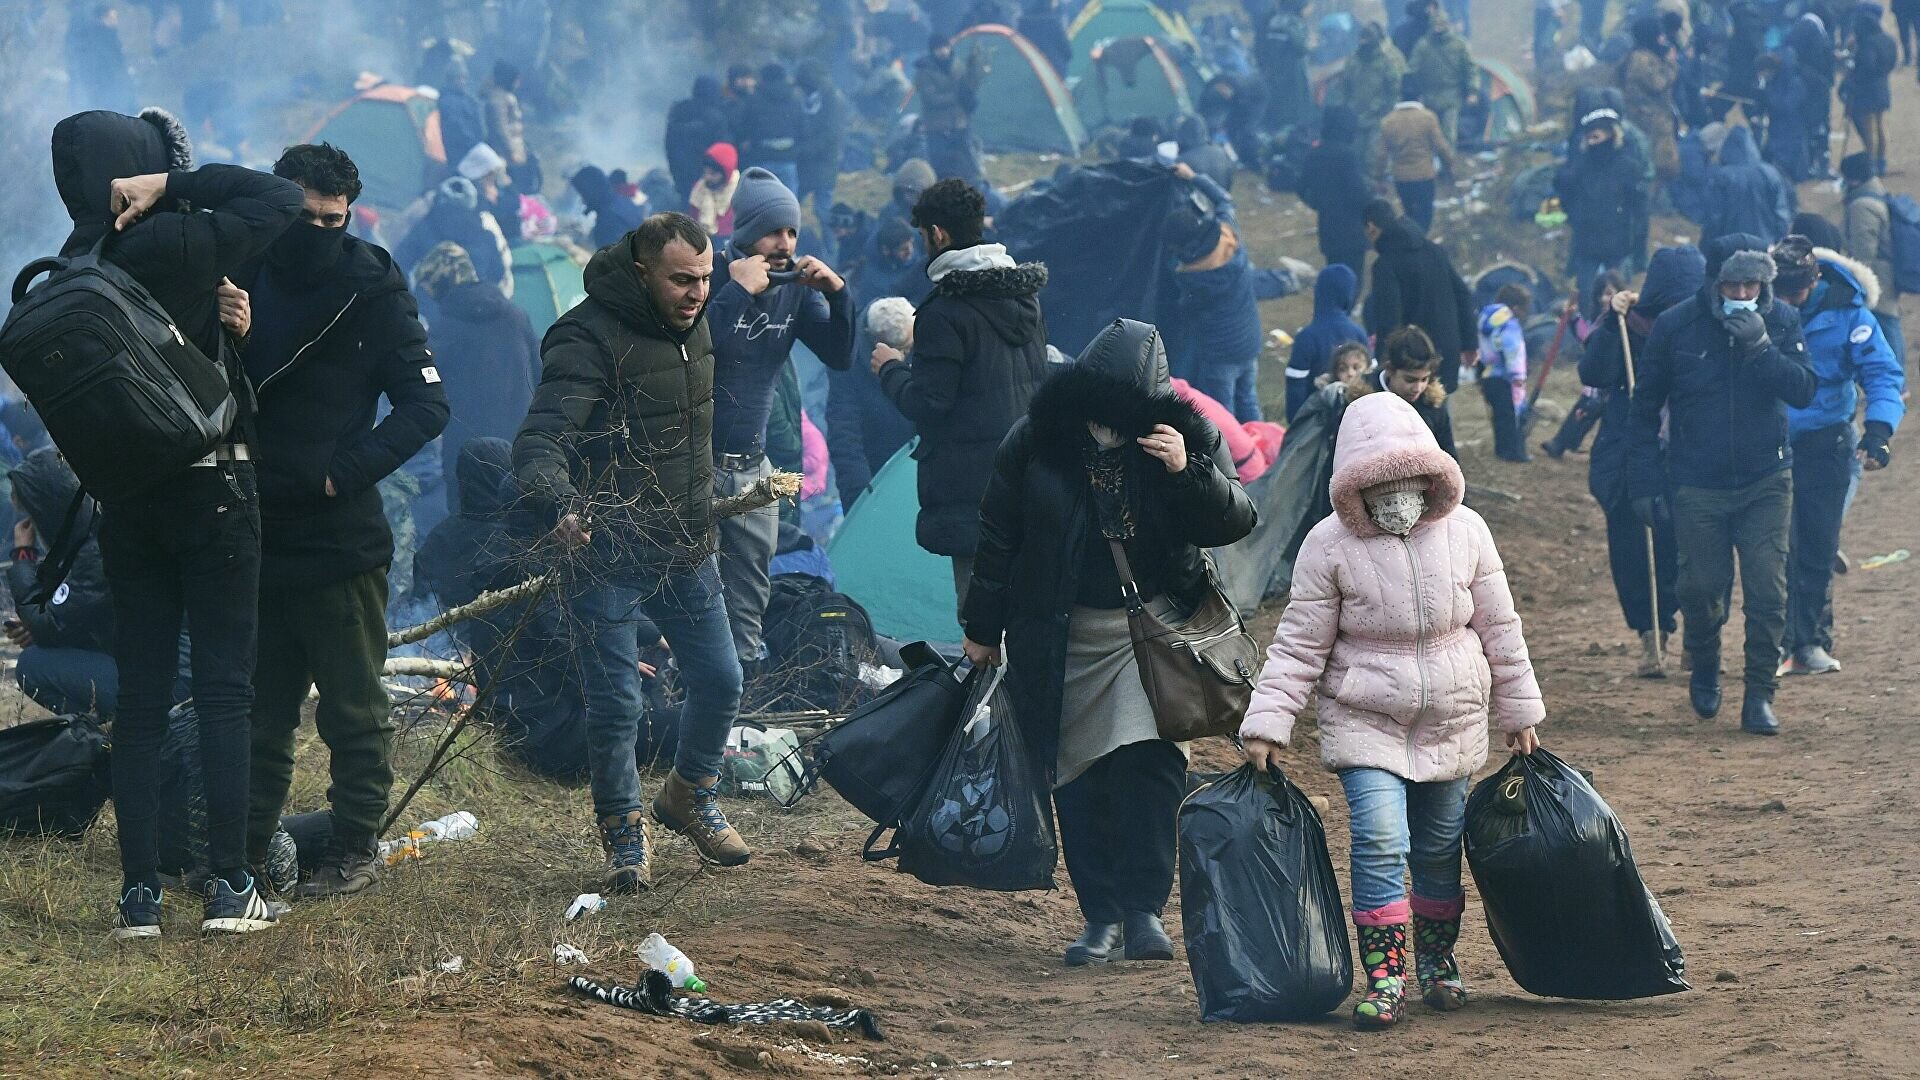 "Готовы ответить", – Россия выступила против Польши из-за мигрантов в Белоруссии